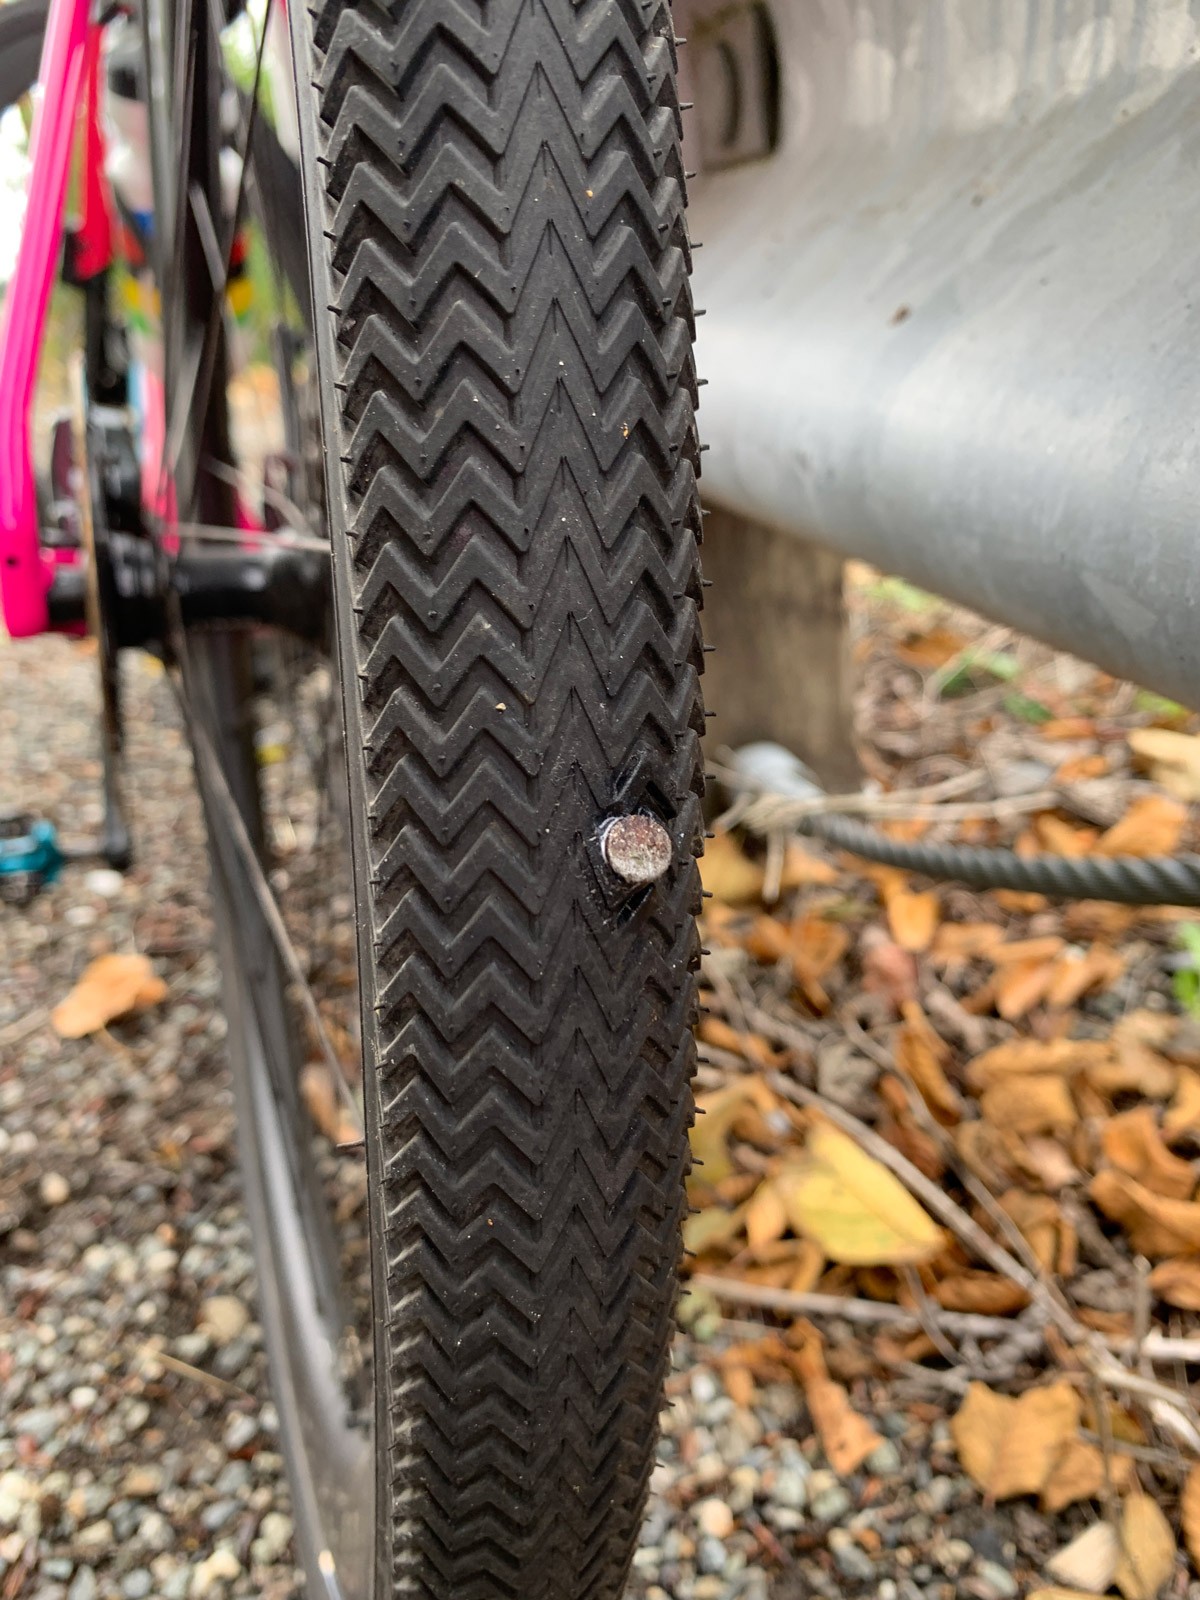 Nail in bike tire.